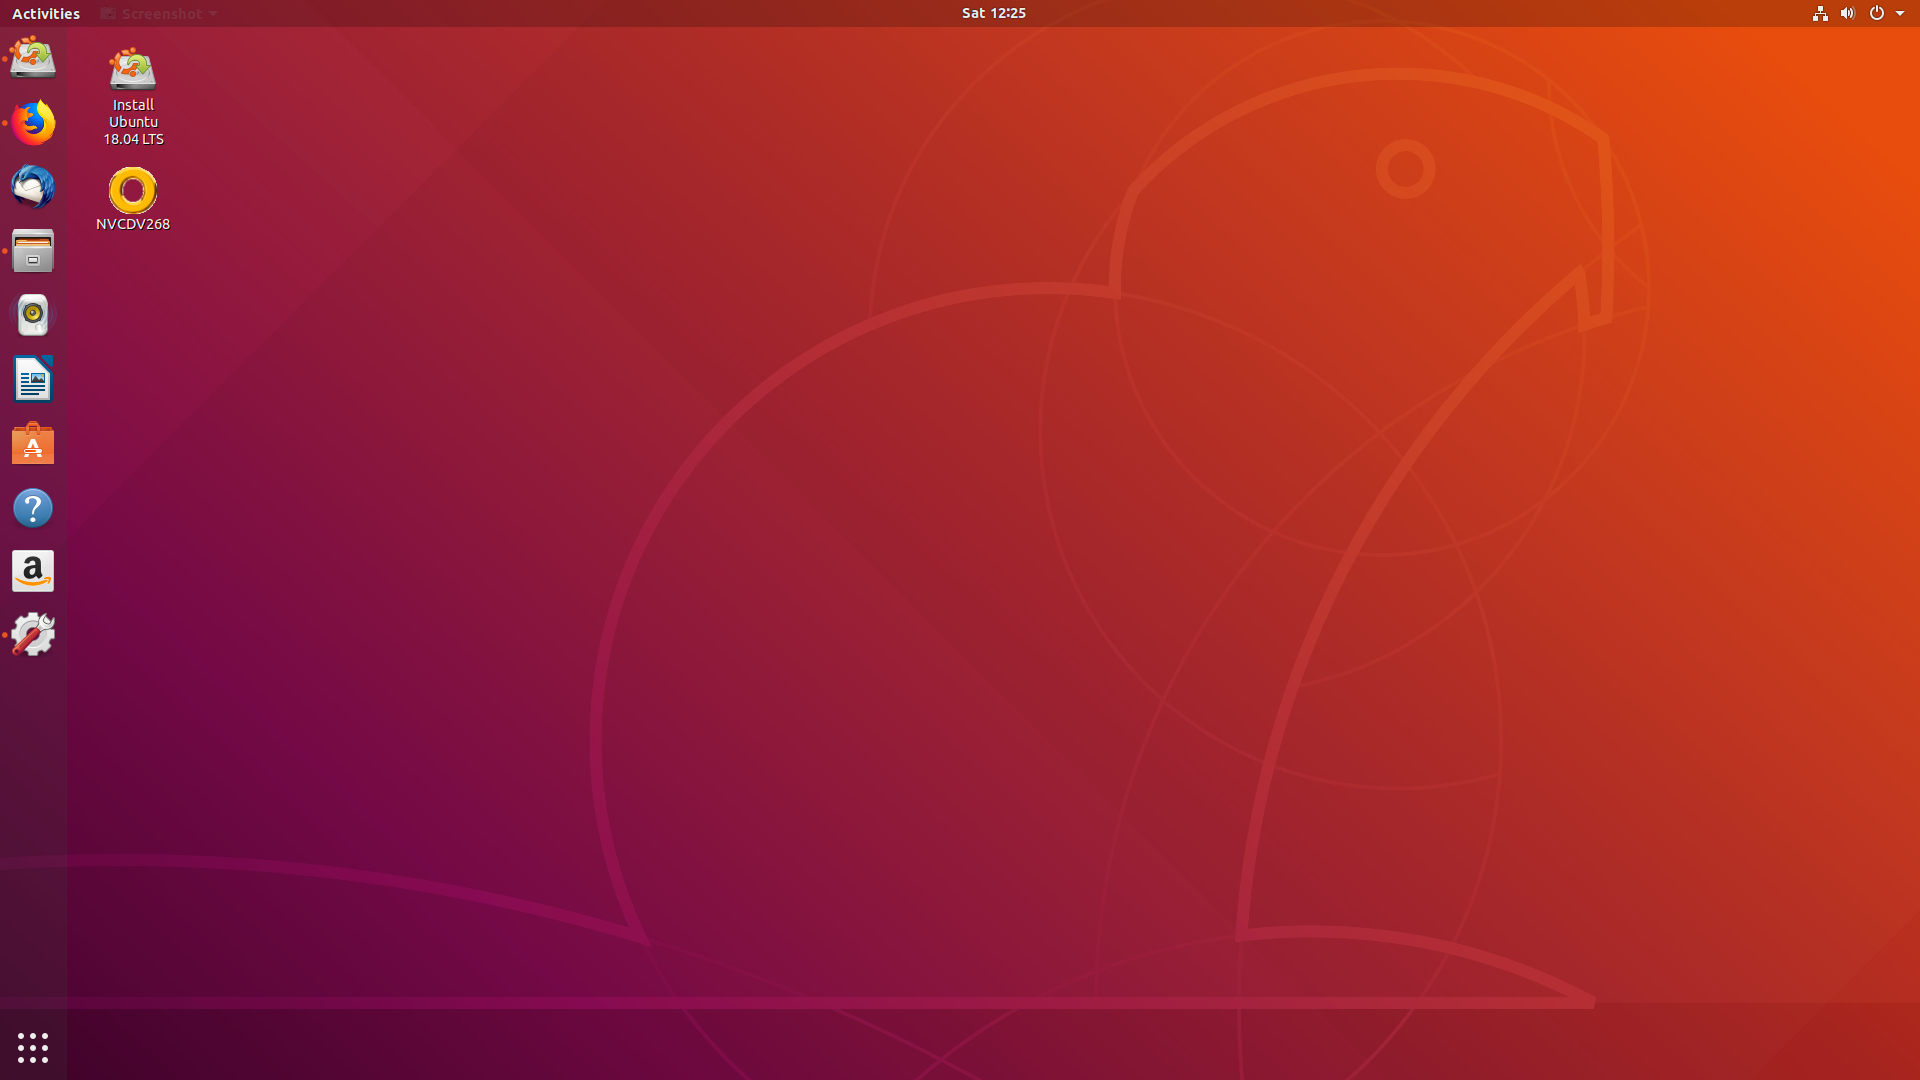 پرکاربرد ترین دستورات مورد استفاده در Terminal و سیستم عامل Linux توزیع Ubuntu